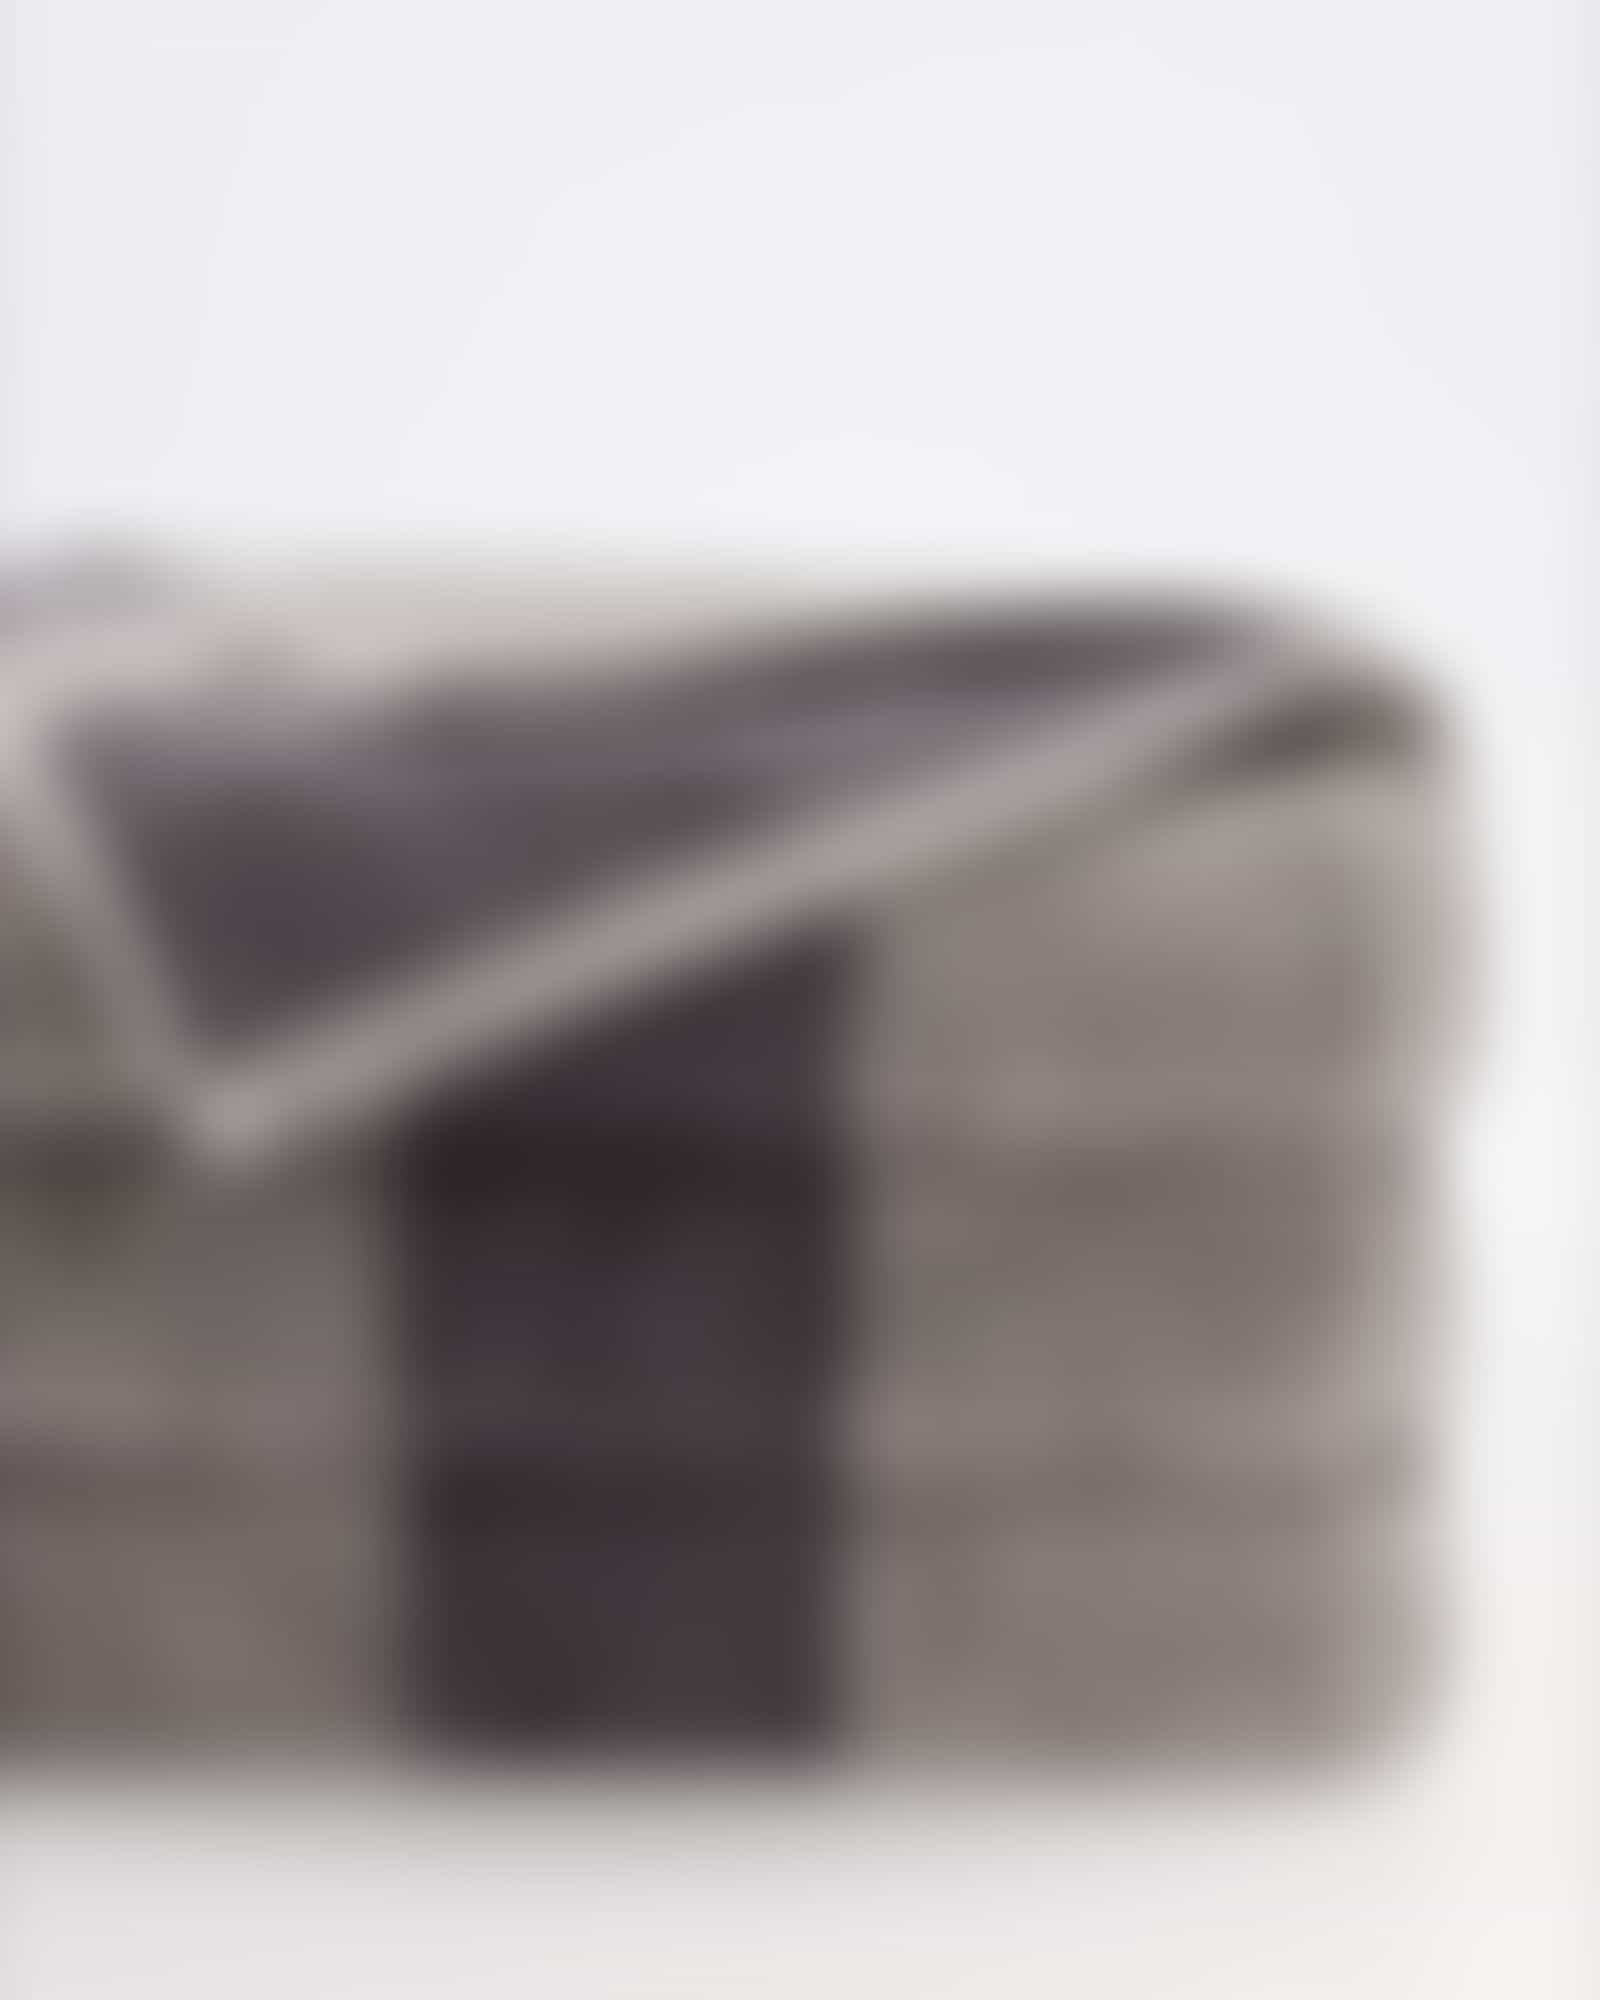 JOOP Shades Stripe 1687 - Farbe: platin - 77 - Waschhandschuh 16x22 cm Detailbild 2